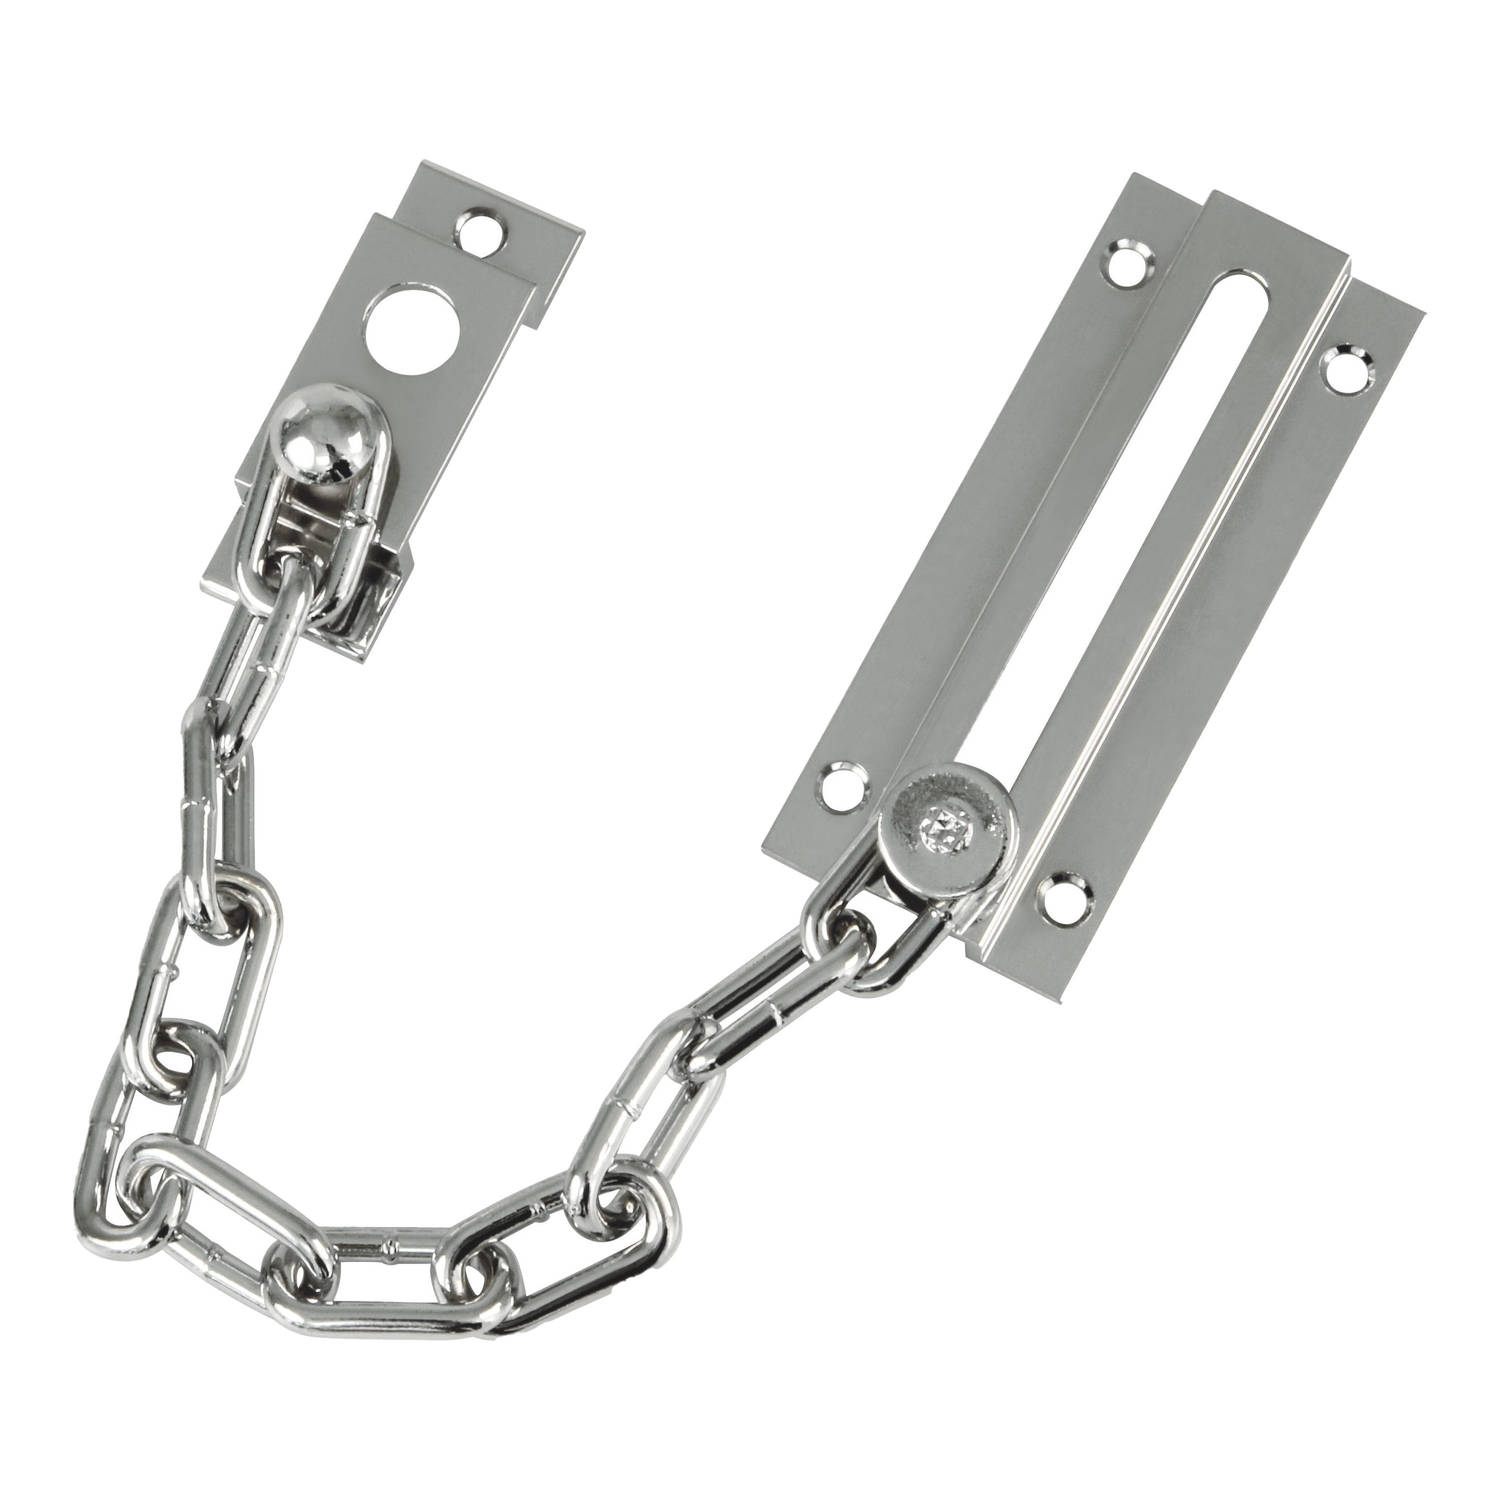 AMIG deurketting - messing - zilver - 18 cm - incl schroeven - inbraakbeveiliging